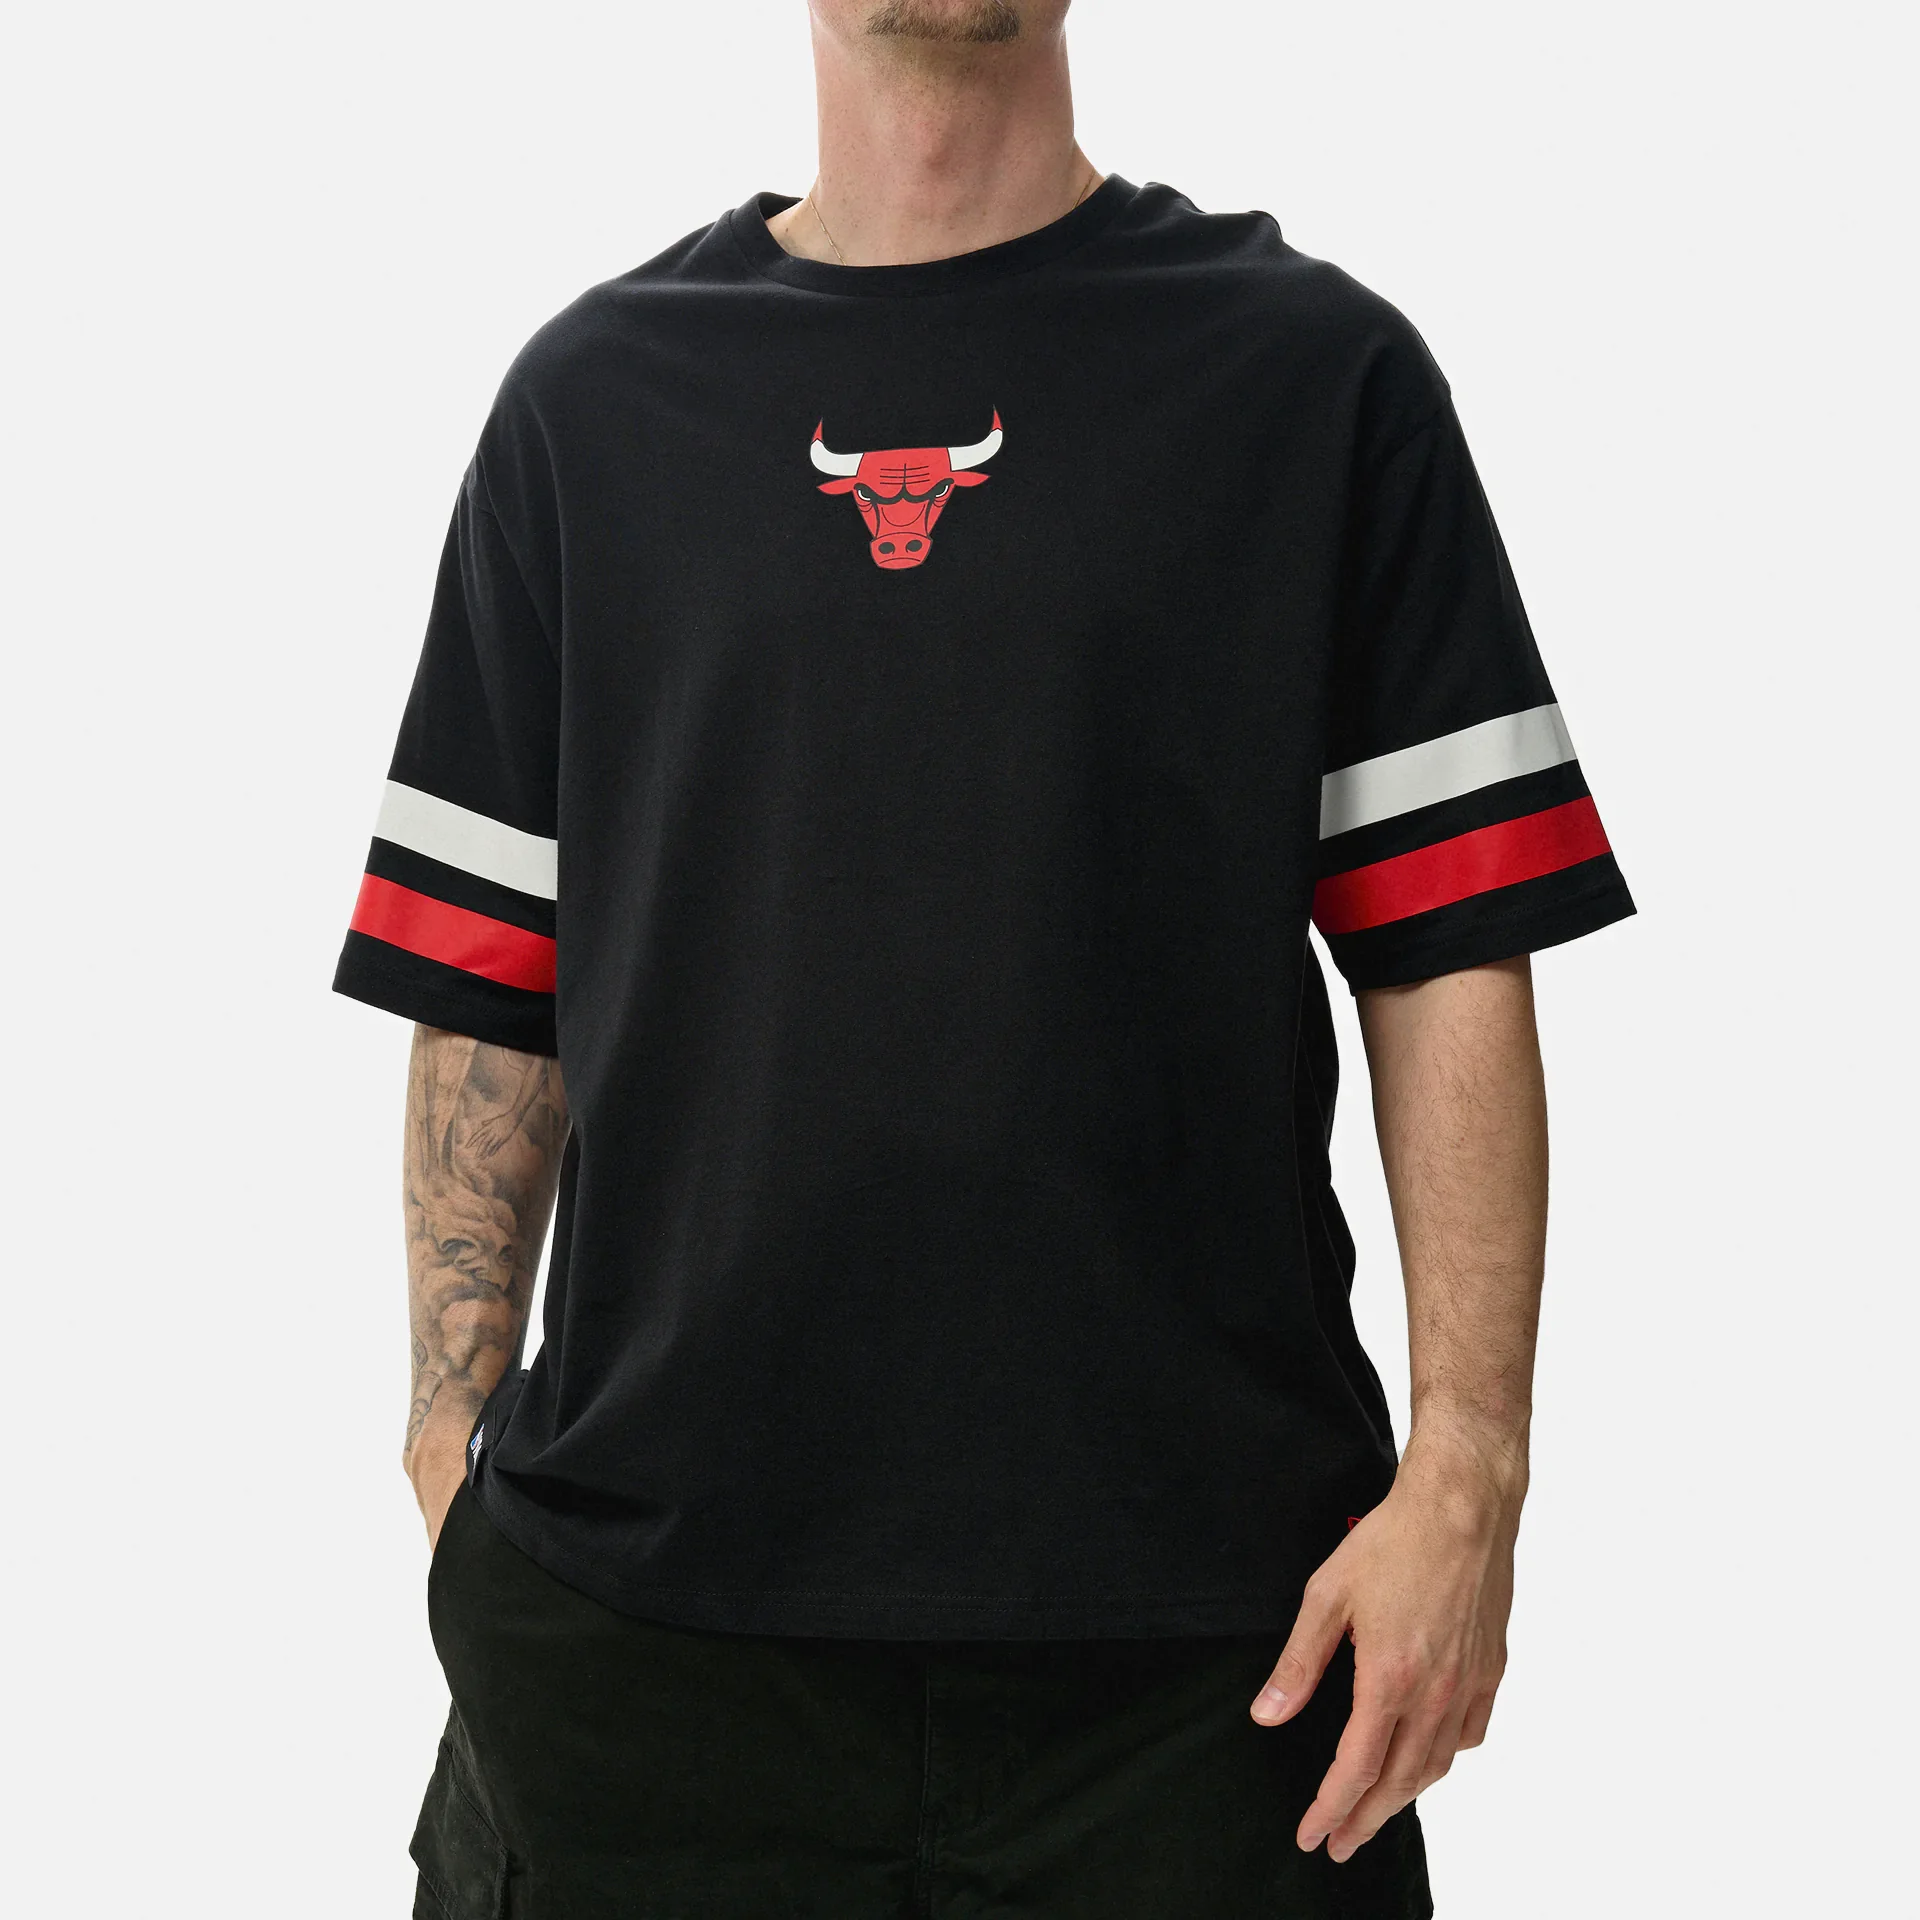 New Era NBA Chicago Bulls Graphic Oversized T-Shirt Black/Red